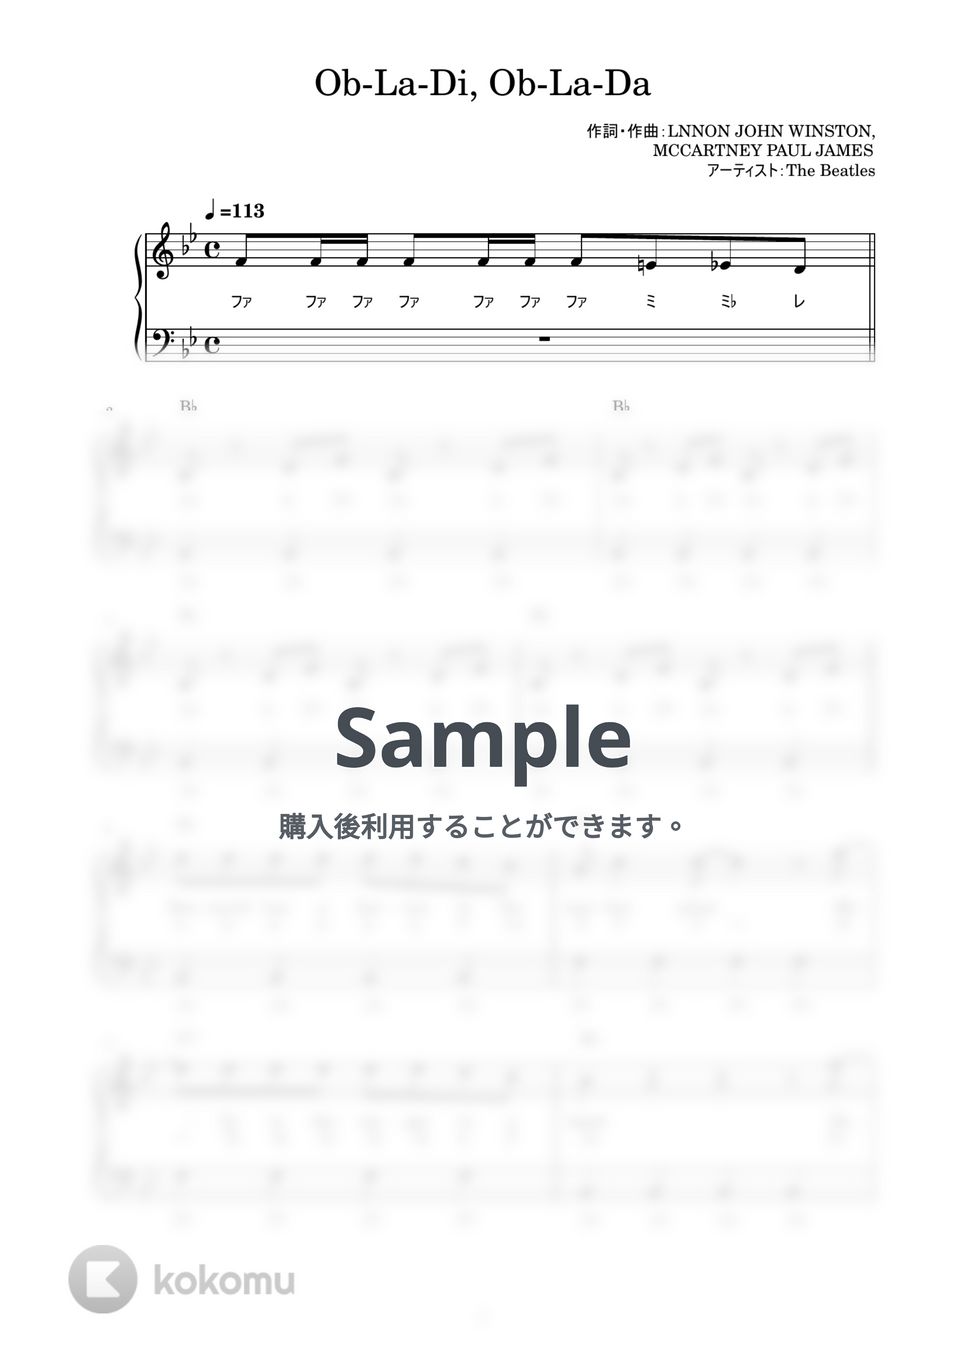 The Beatles - Ob-La-Di, Ob-La-Da (かんたん / 歌詞付き / ドレミ付き / 初心者) by piano.tokyo